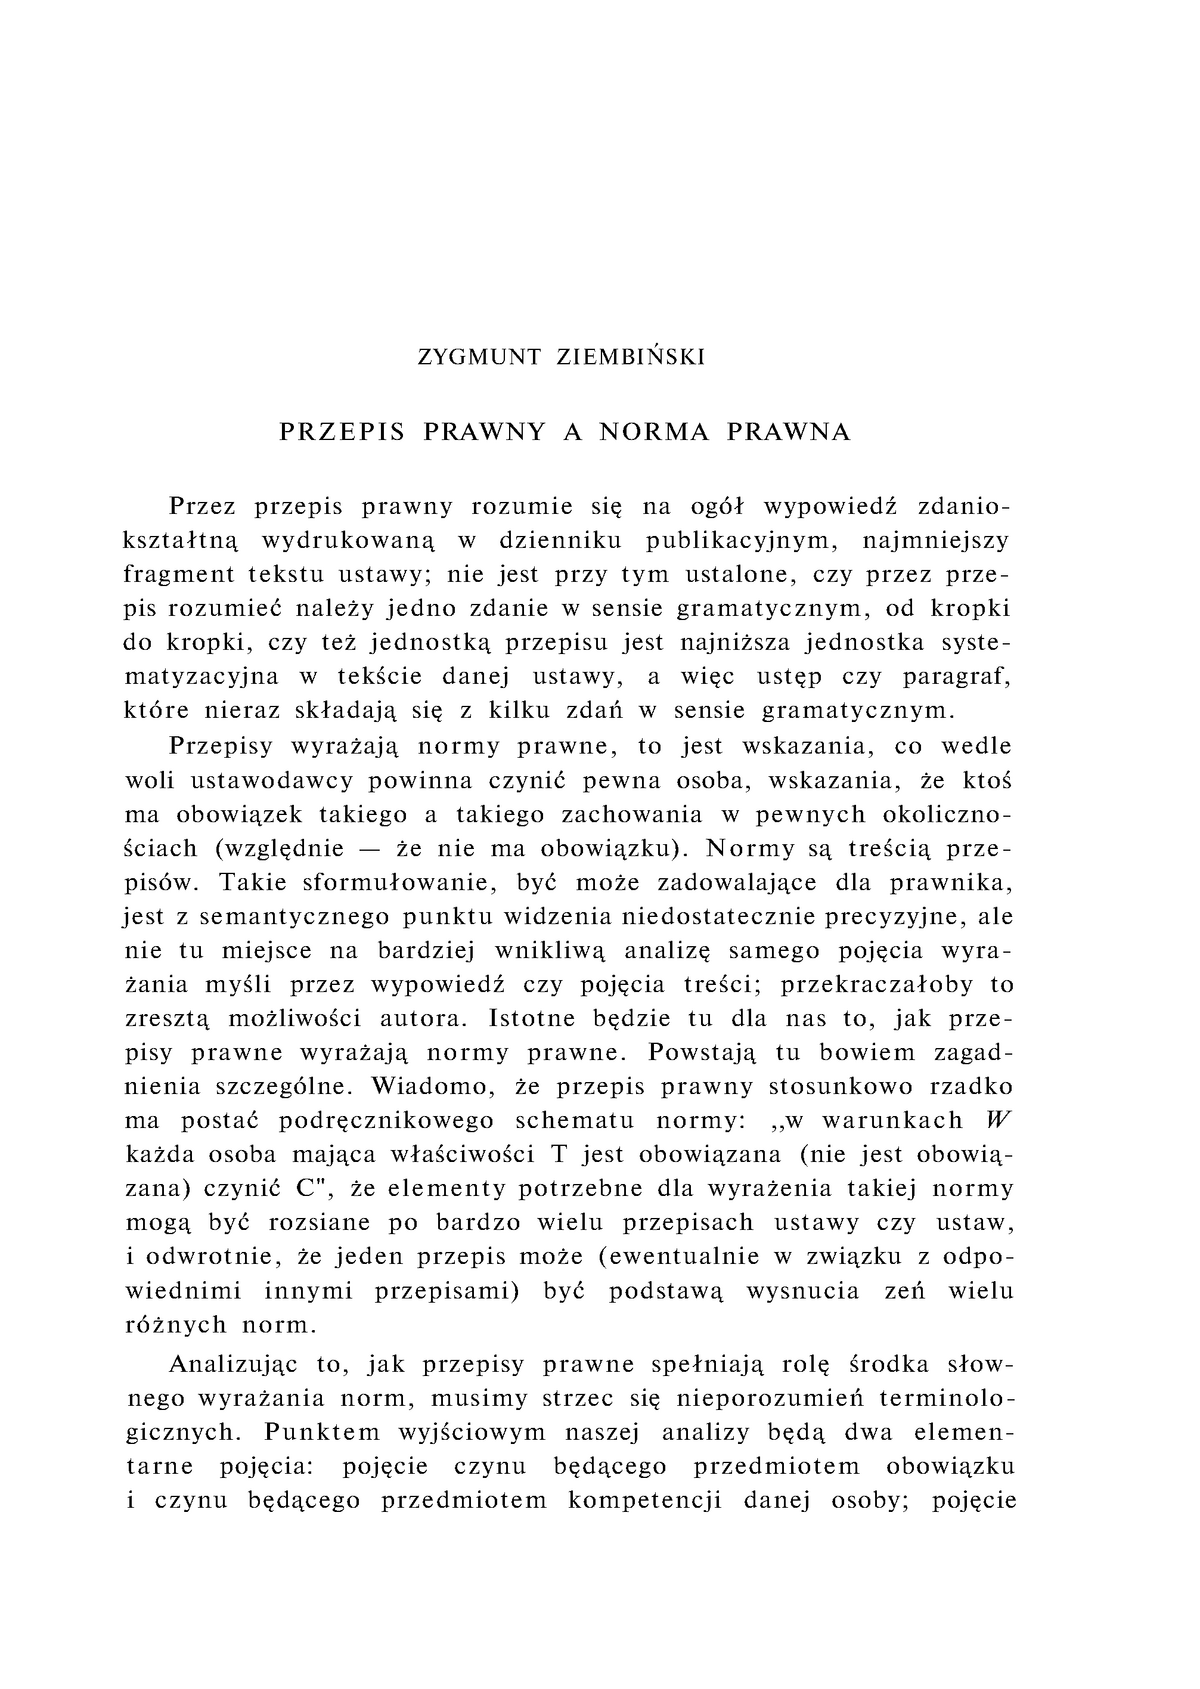 Norma Prawna A Przepis Prawny 006 Zygmunt ZiembiŃSKI RPEi S 22(1), 1960 PRZEPIS PRAWNY A NORMA PRAWNA